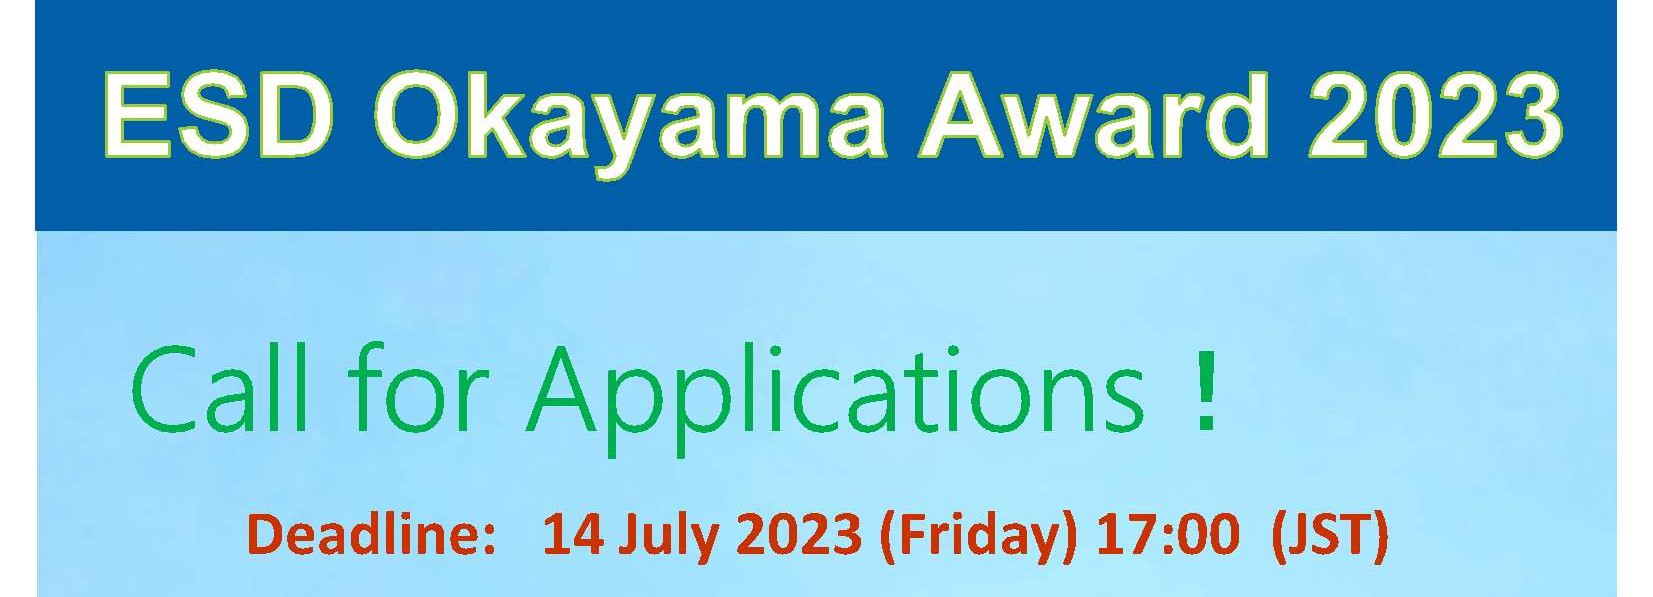 Text that says, "ESD Okayama Award 2023. Call for Applications."